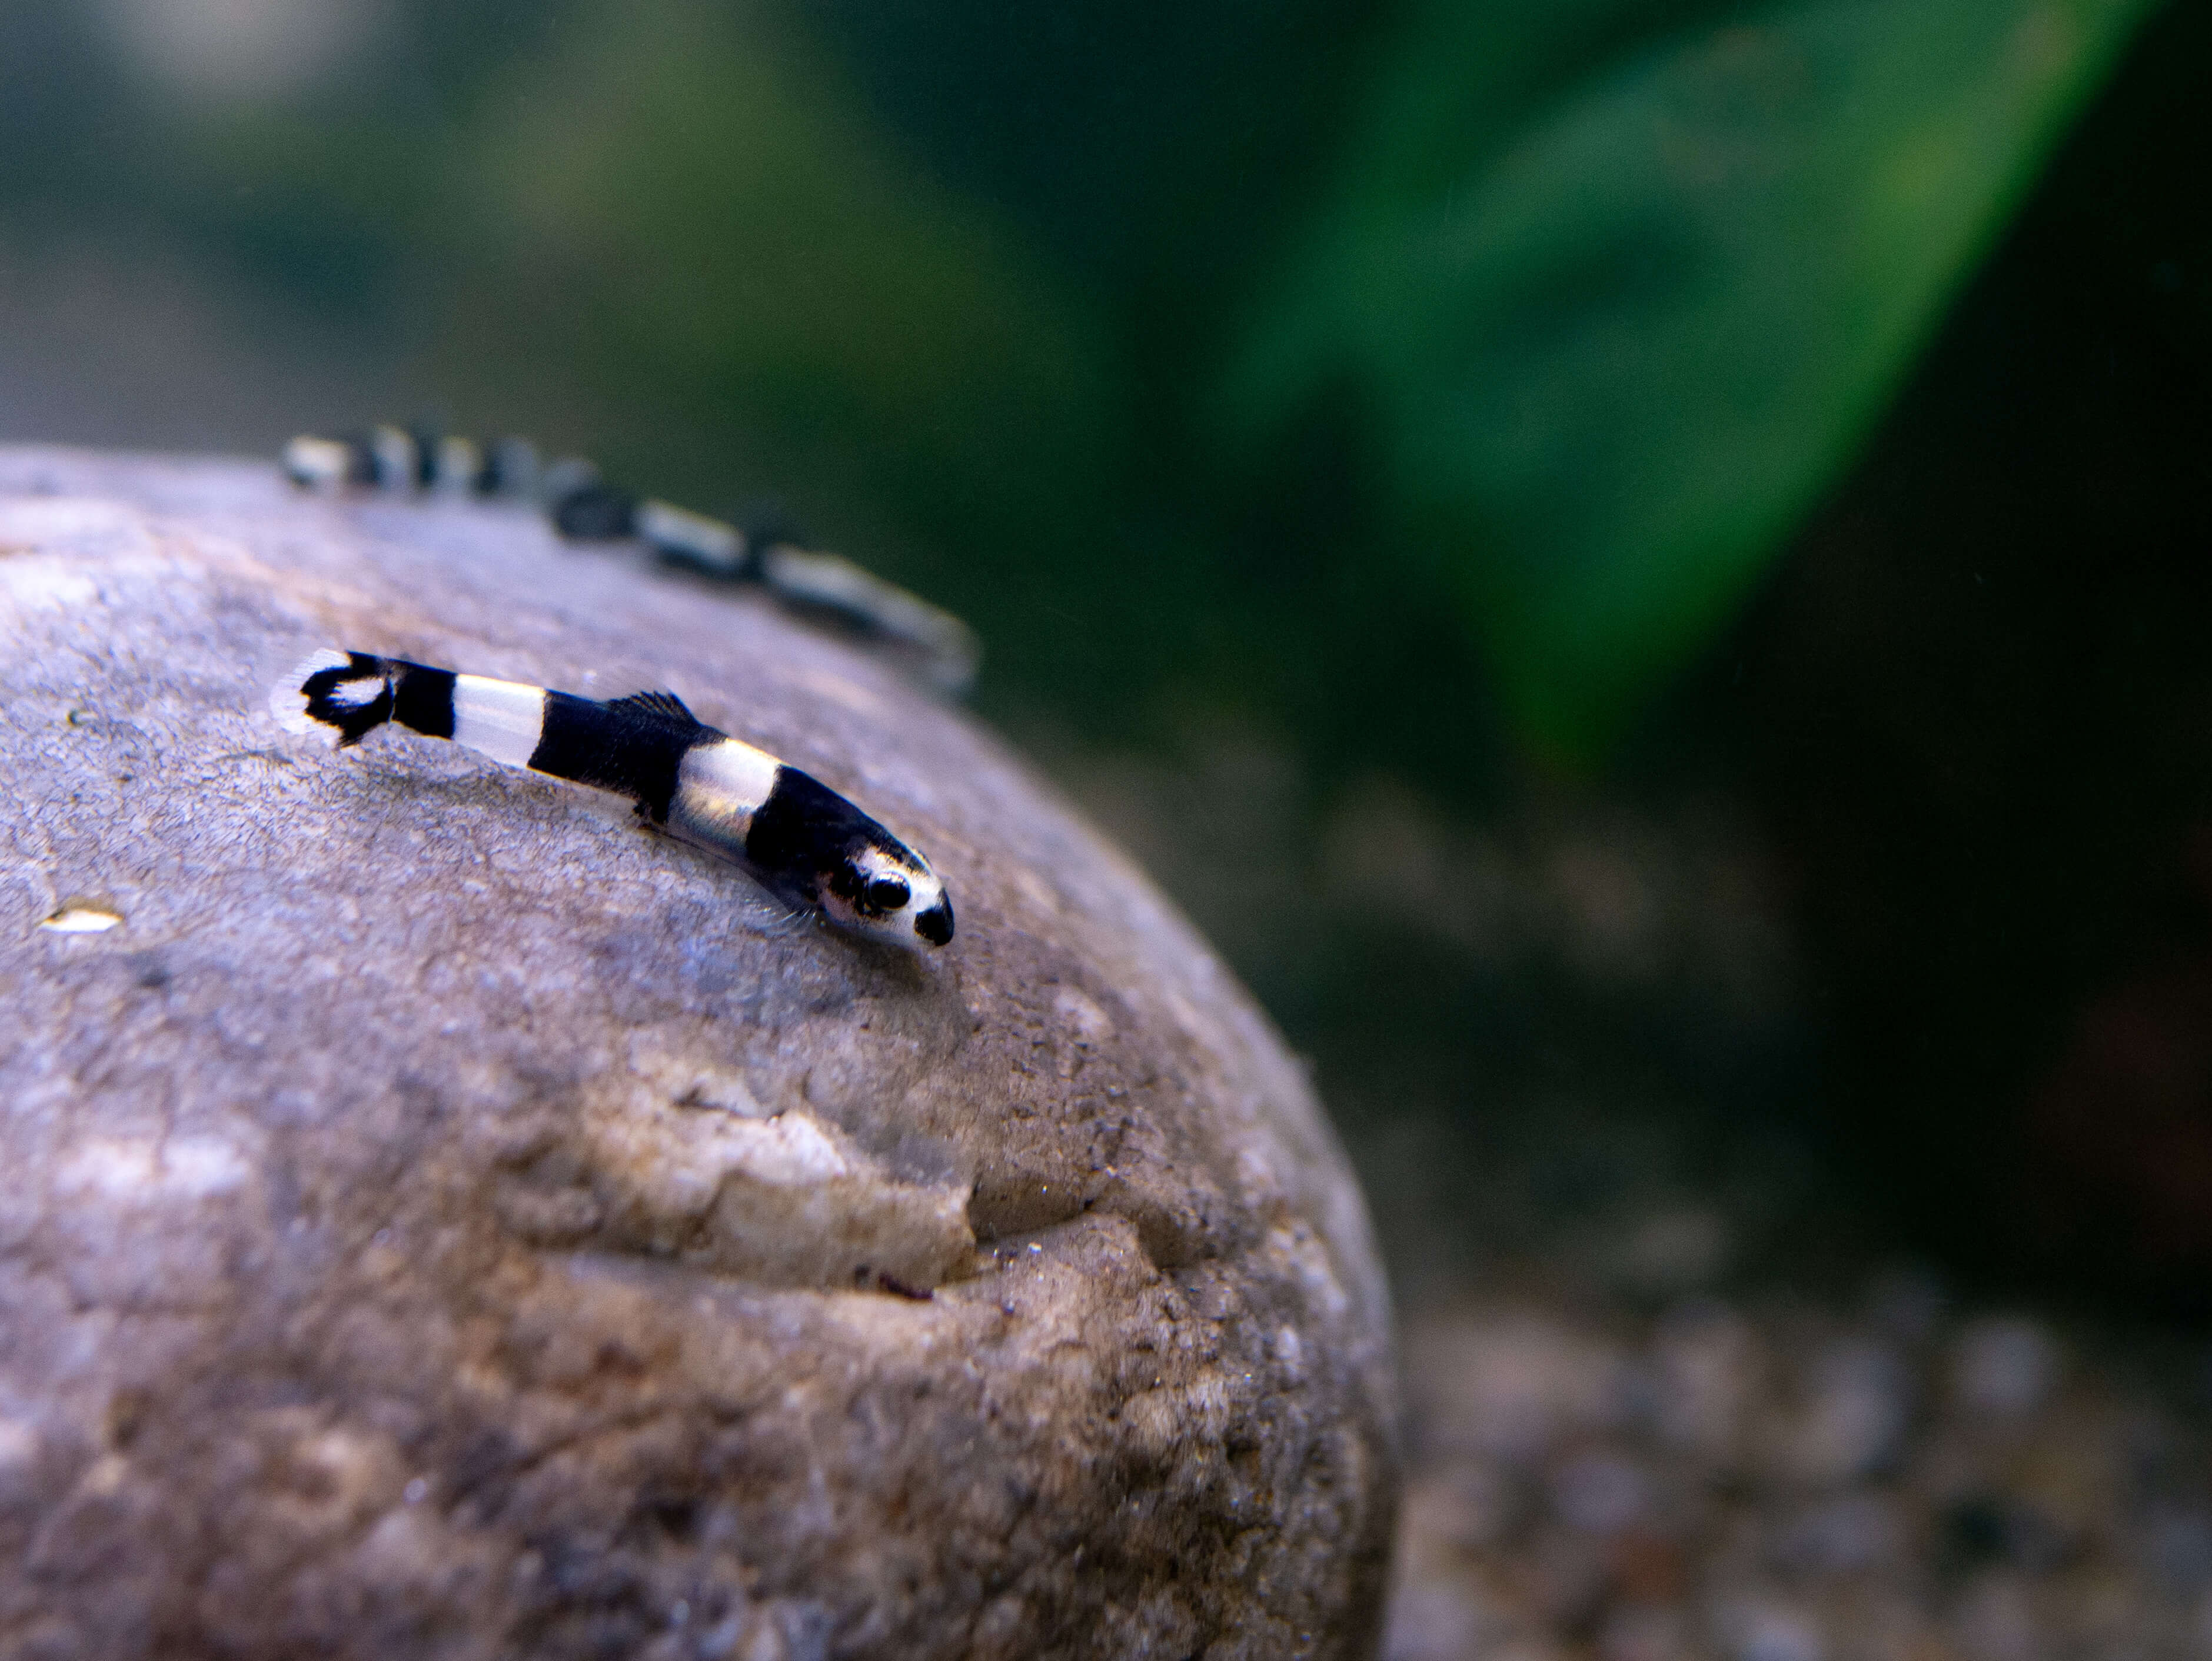 protomyzon pachychilus - loche panda- poisson d'aquarium